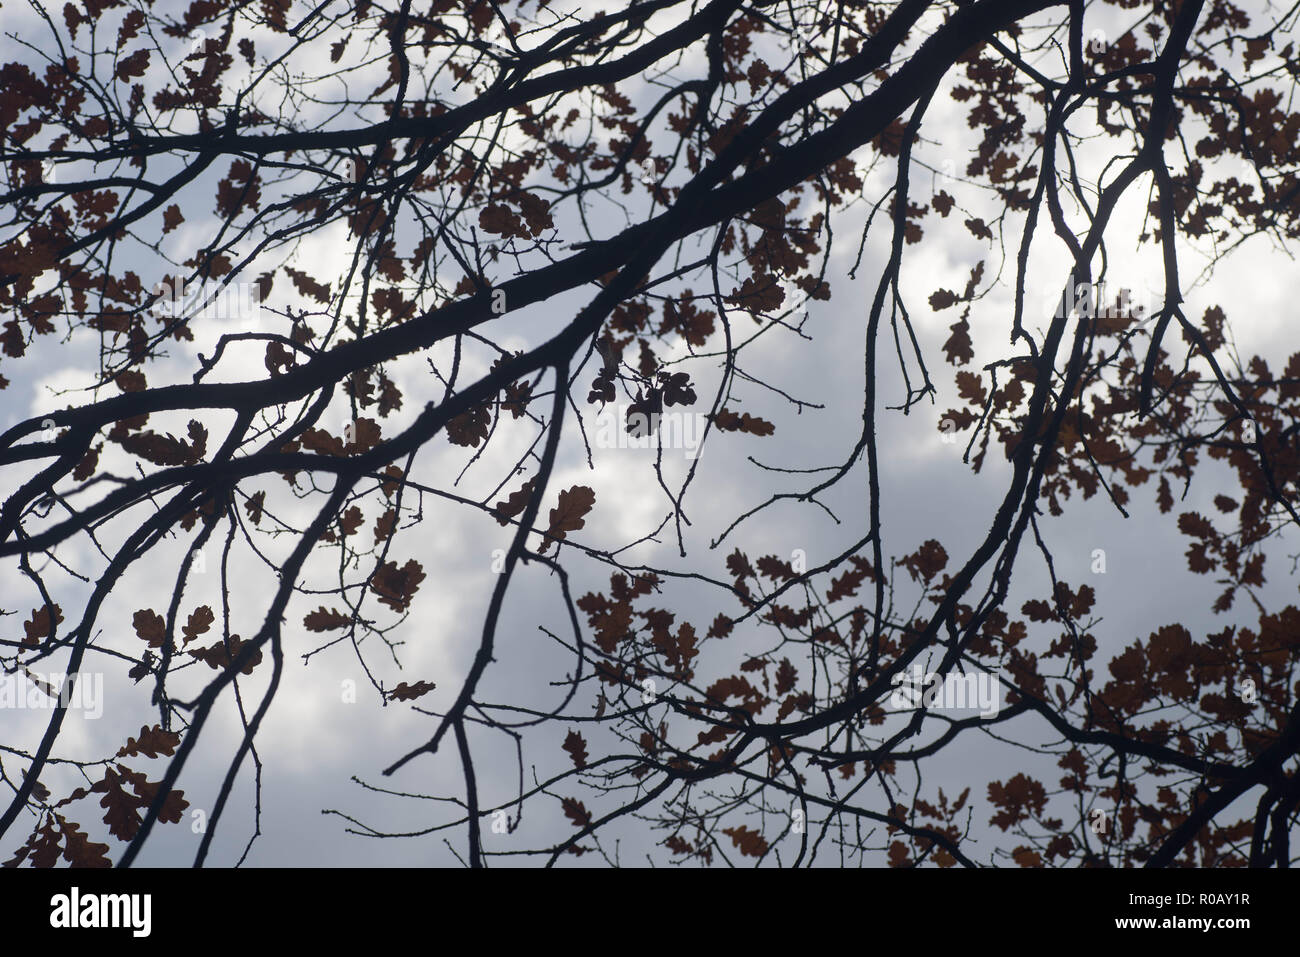 Oak tree branches silhouettes contre le fond de ciel nuageux Banque D'Images